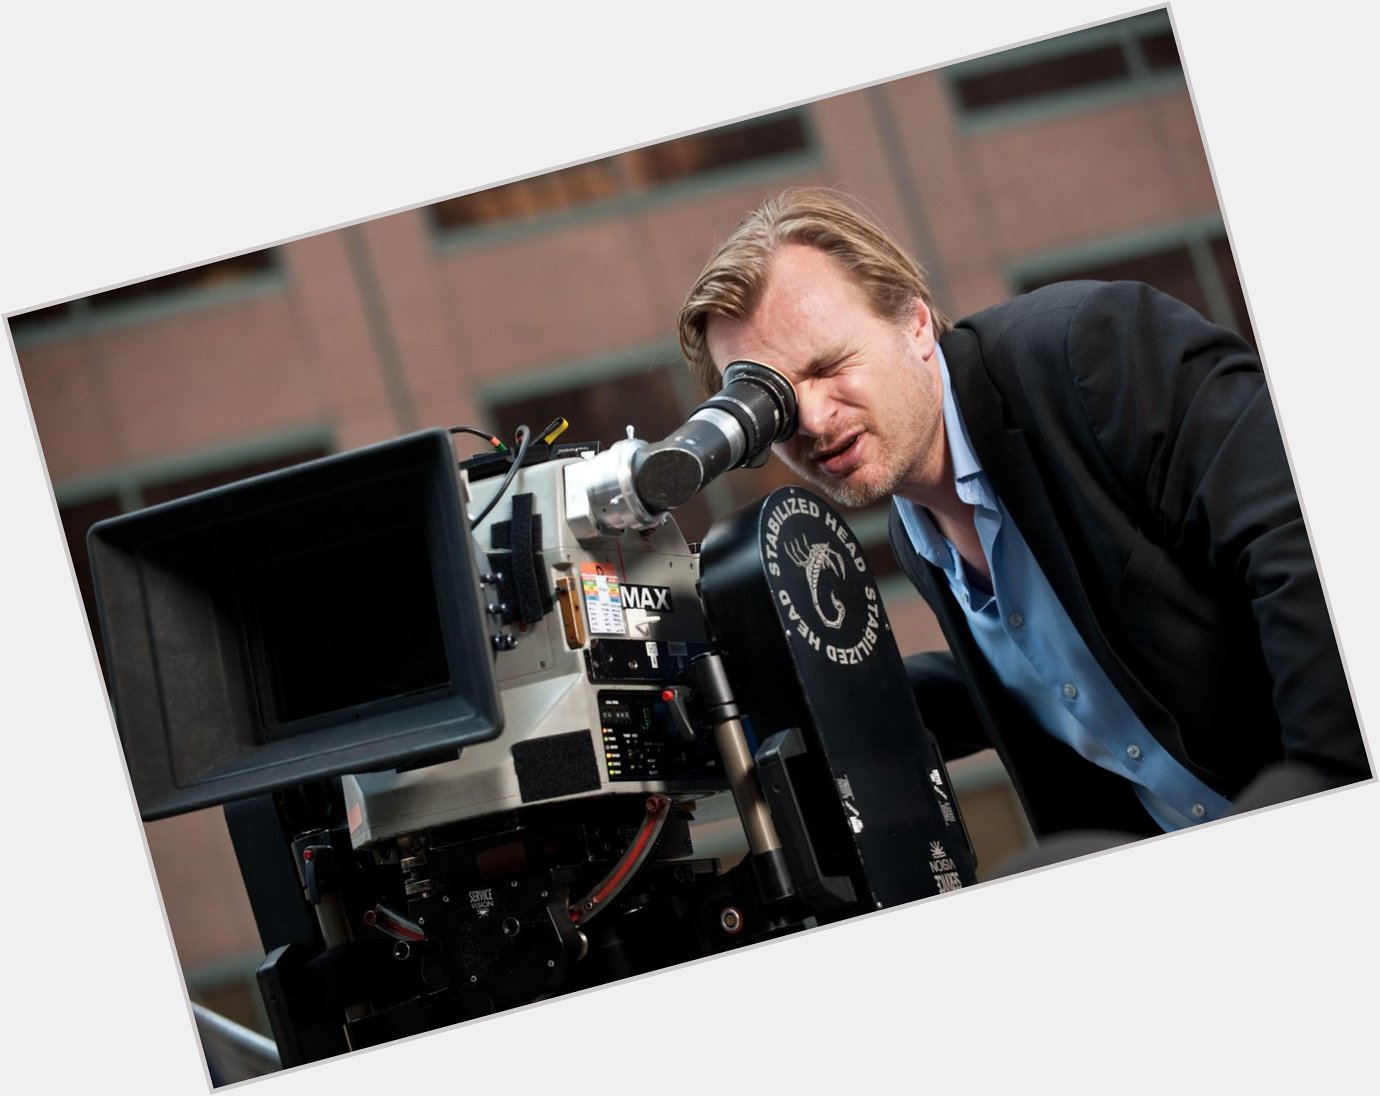 Einer der großen Regisseure unserer Zeit: Christopher Nolan hat Geburtstag und wird 45 Jahre alt. Happy Birthday! 